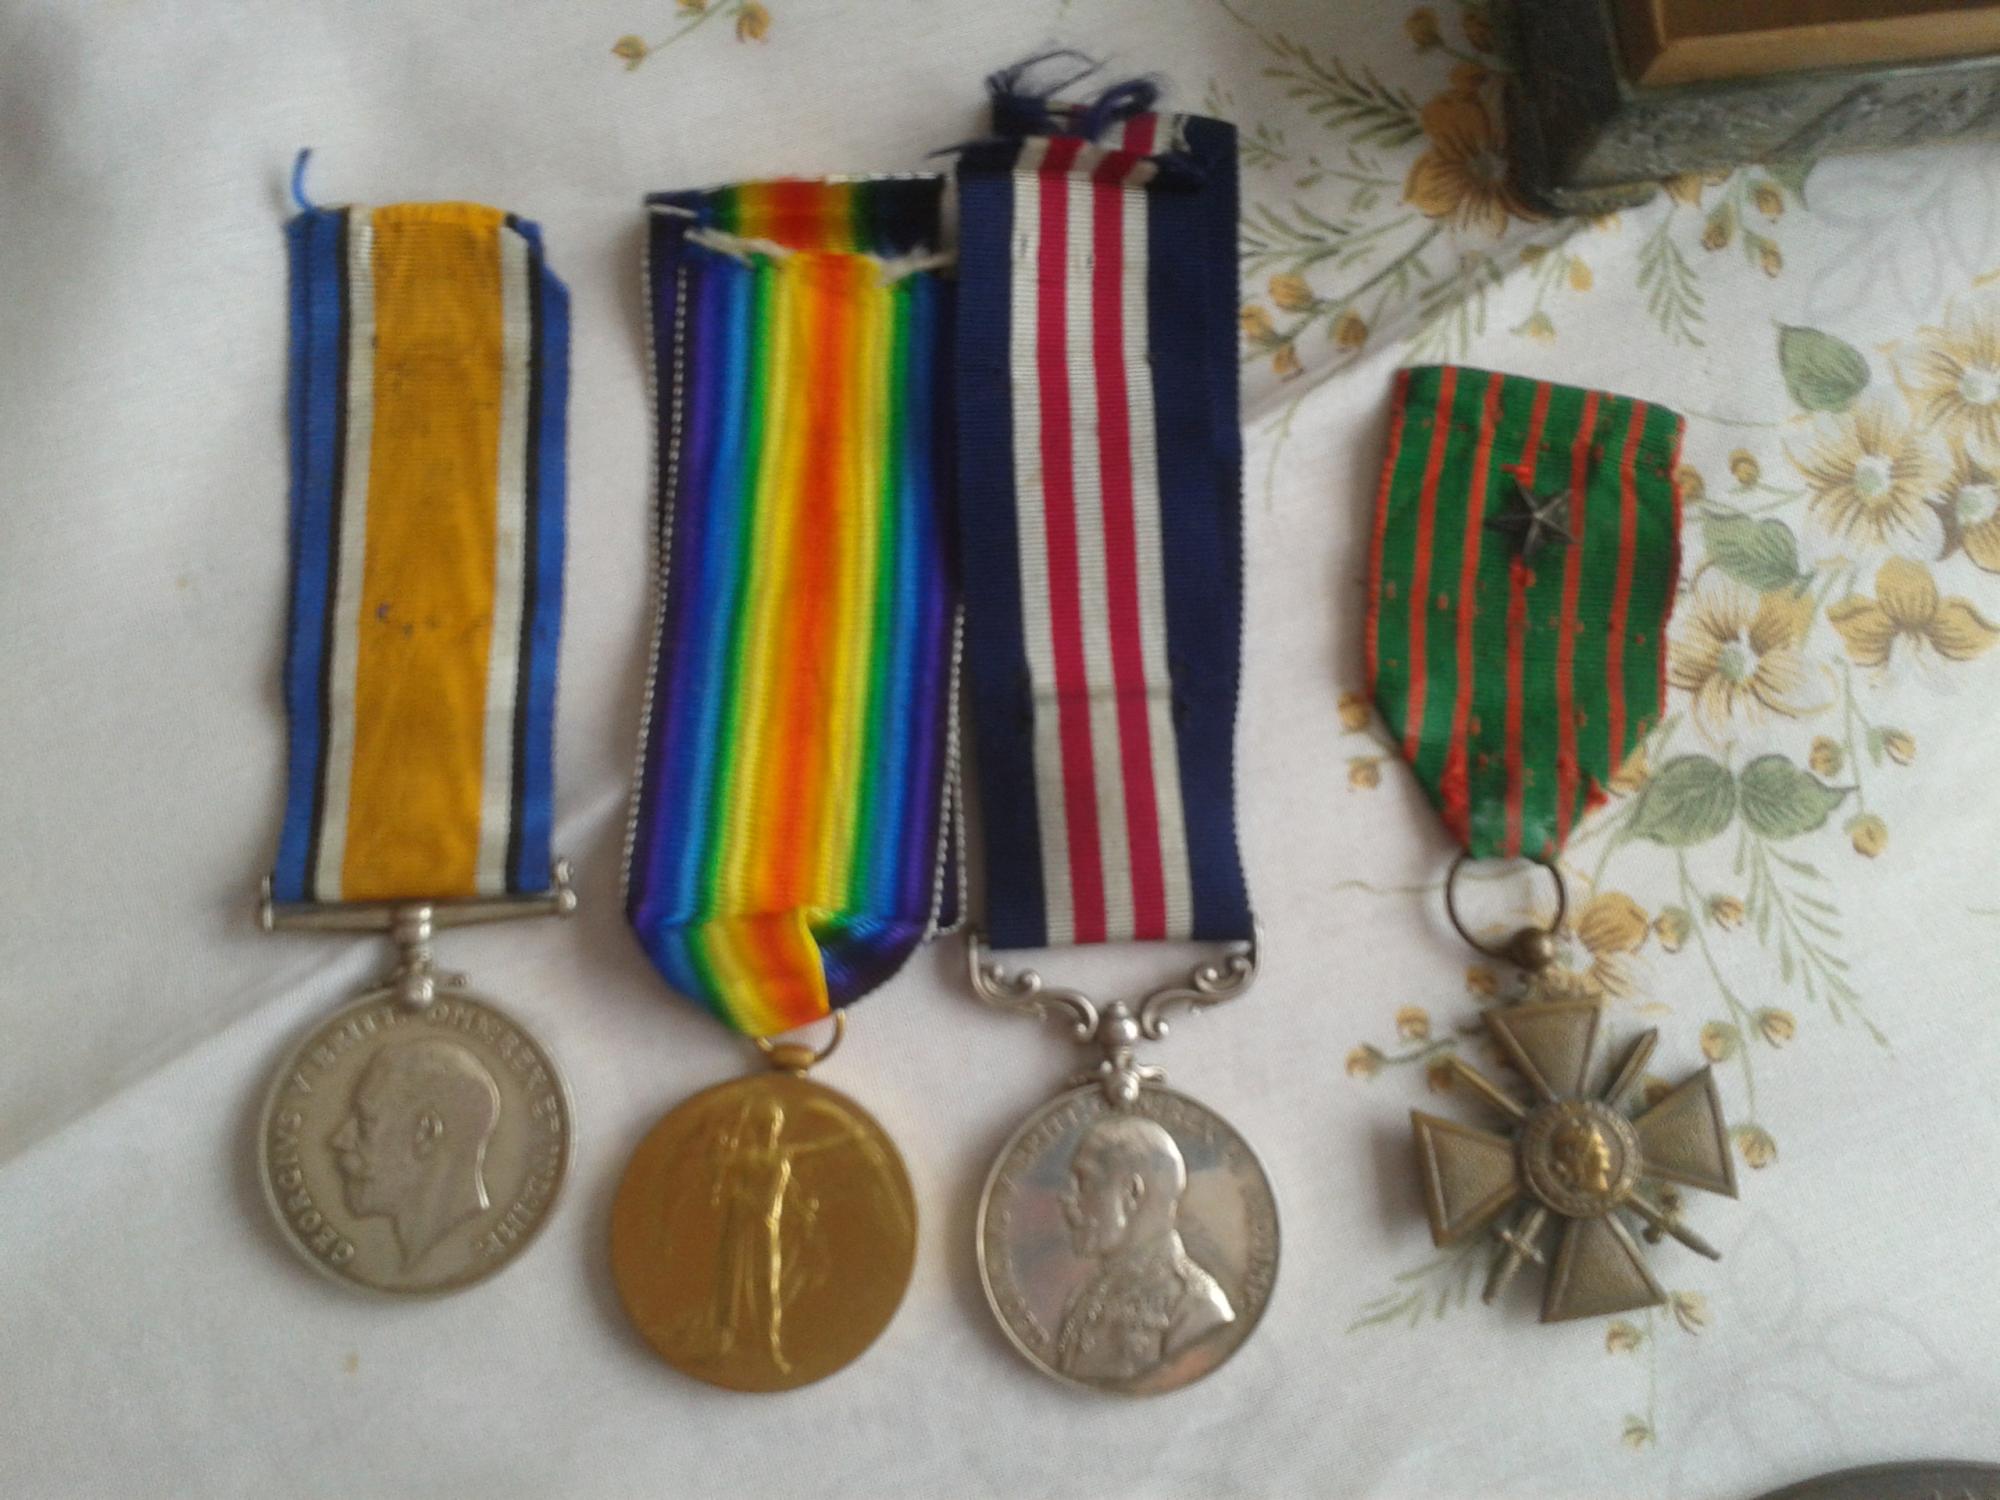 Serjeant Cecil L Owen's medals